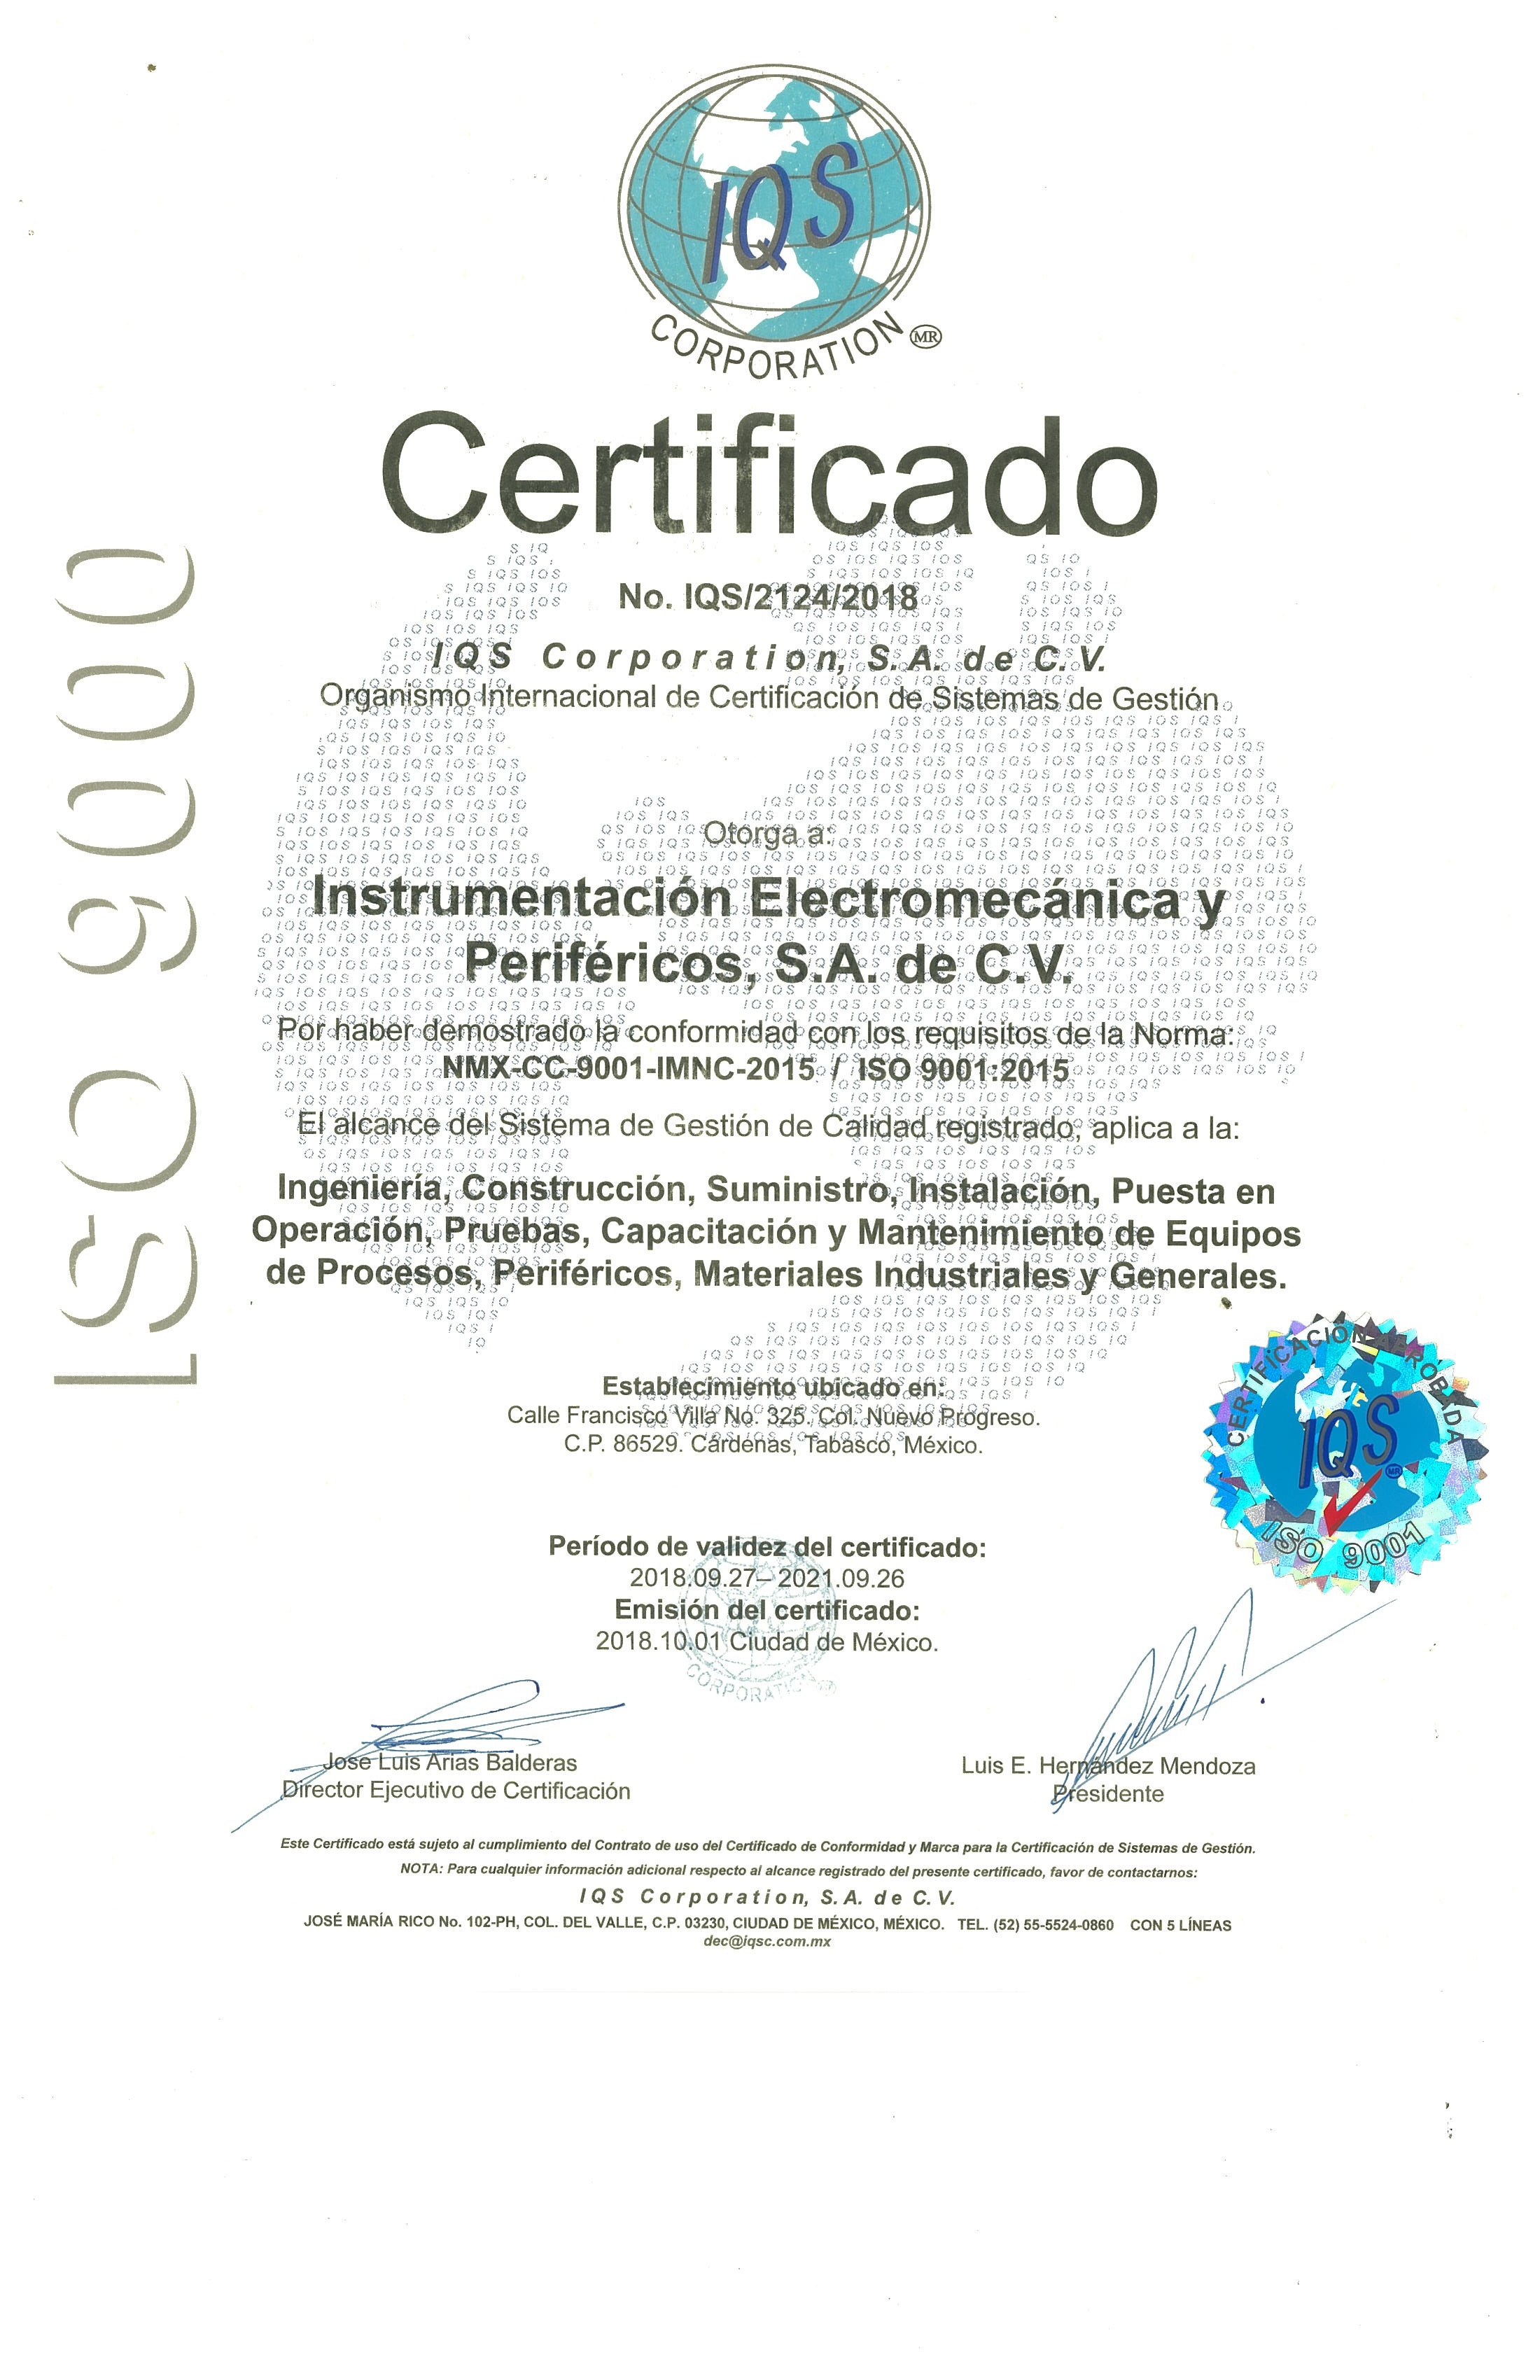 https://0201.nccdn.net/1_2/000/000/0a7/7da/certificado-ISO-9000-2200x3400.jpg